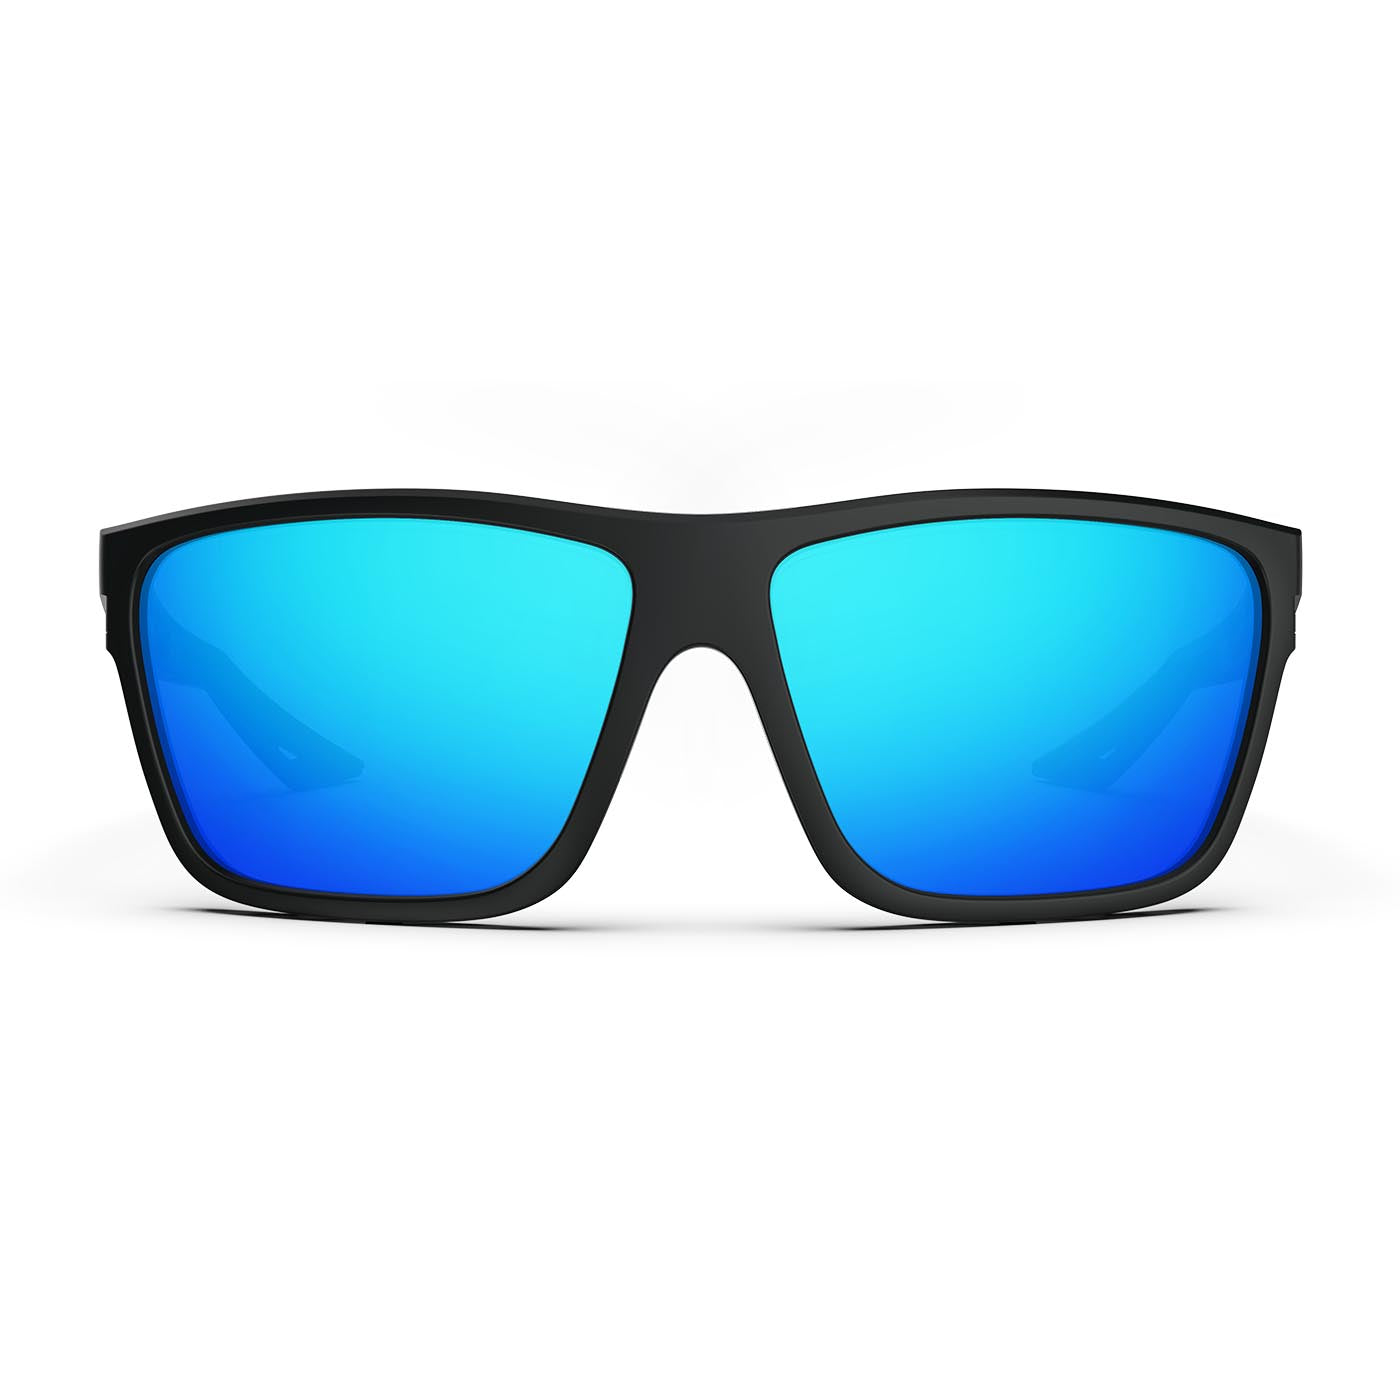 Icebreaker Sports Polarized Sunglasses - Lifetime Warranty - Men & Women  Glasses for Golf, Fishing, and More - Black Frame & Blue Lens